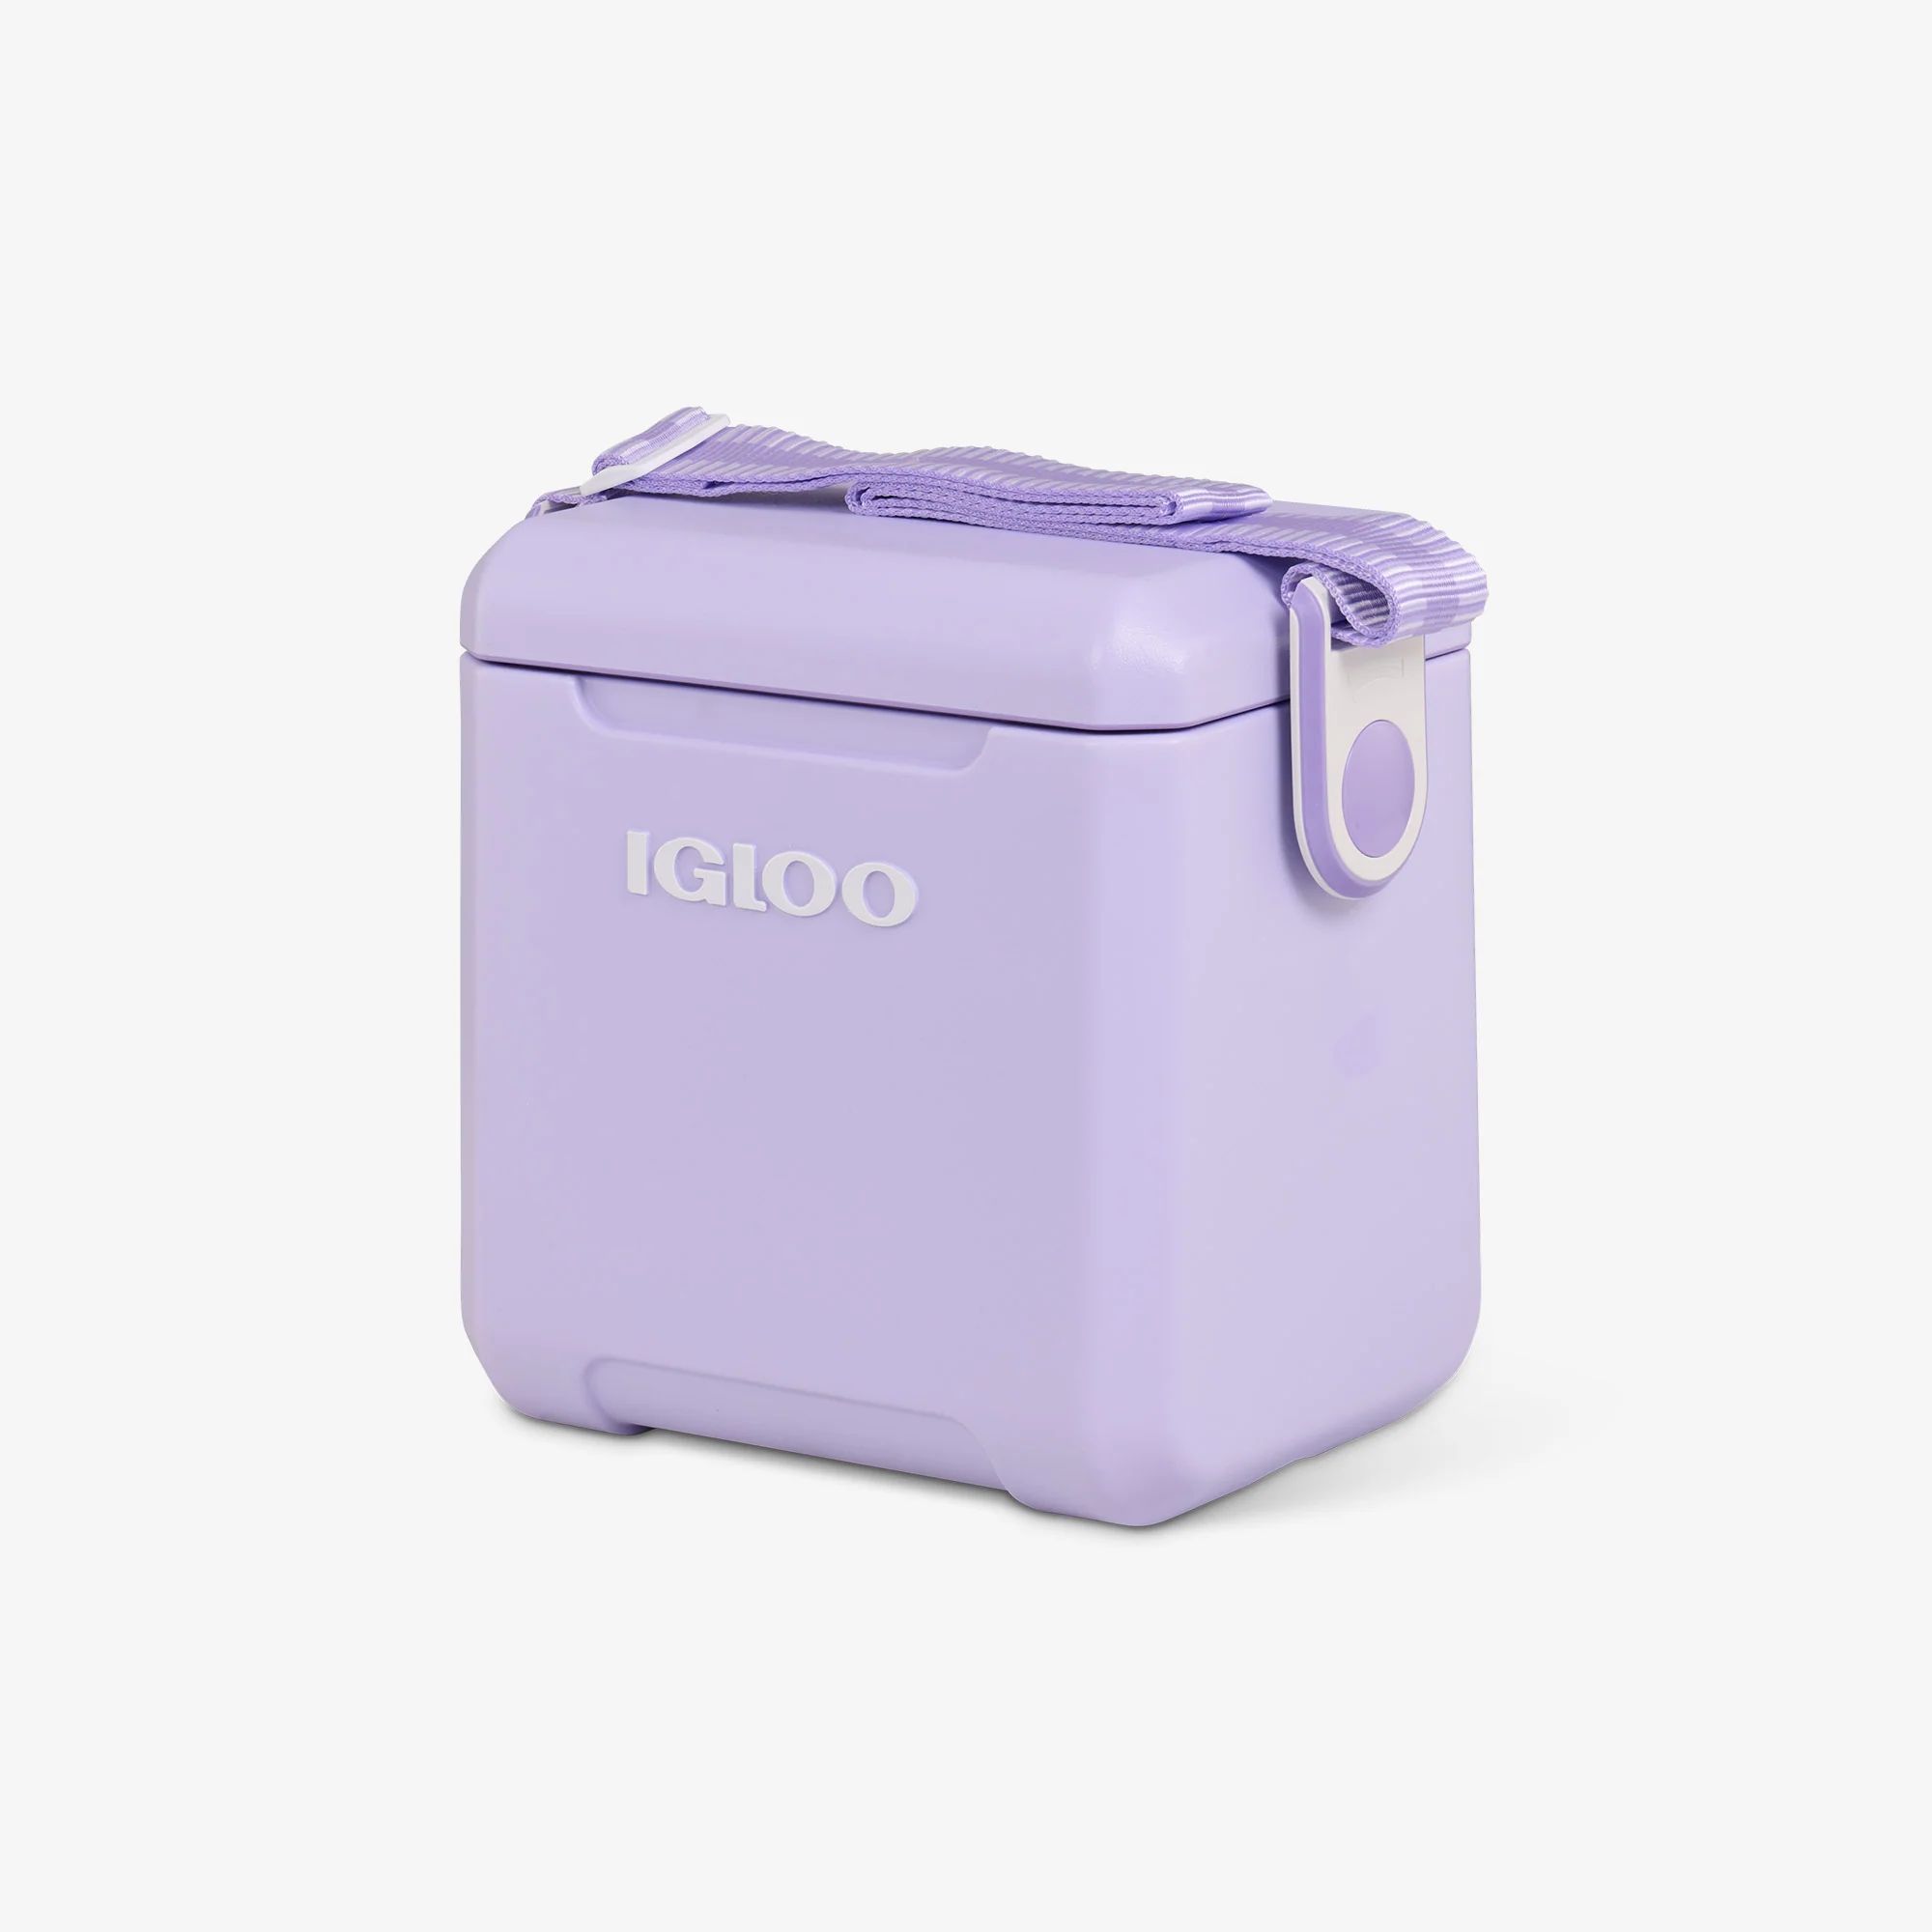 Tag Along Too Cooler 11 Qt | Igloo Coolers